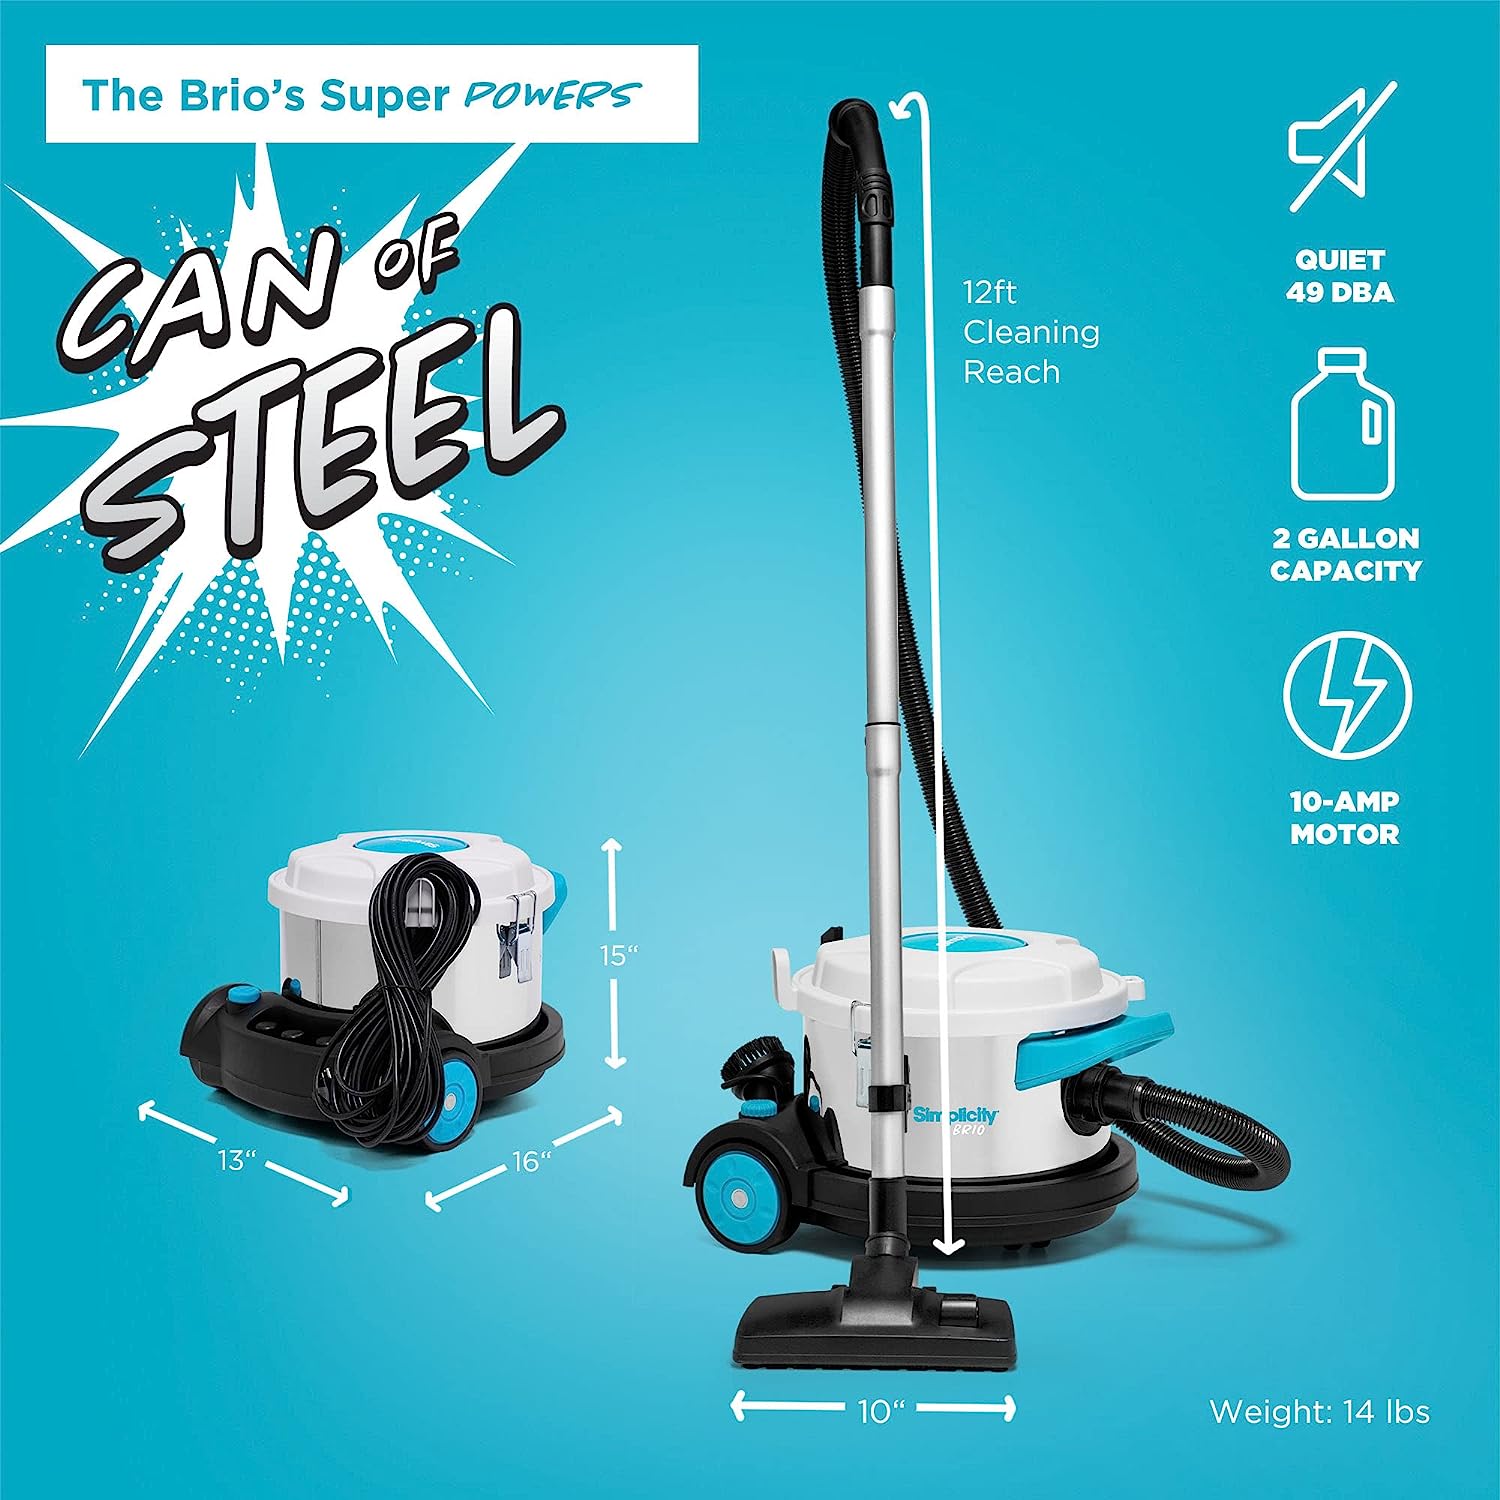 Simplicity Brio Cannister Vacuum